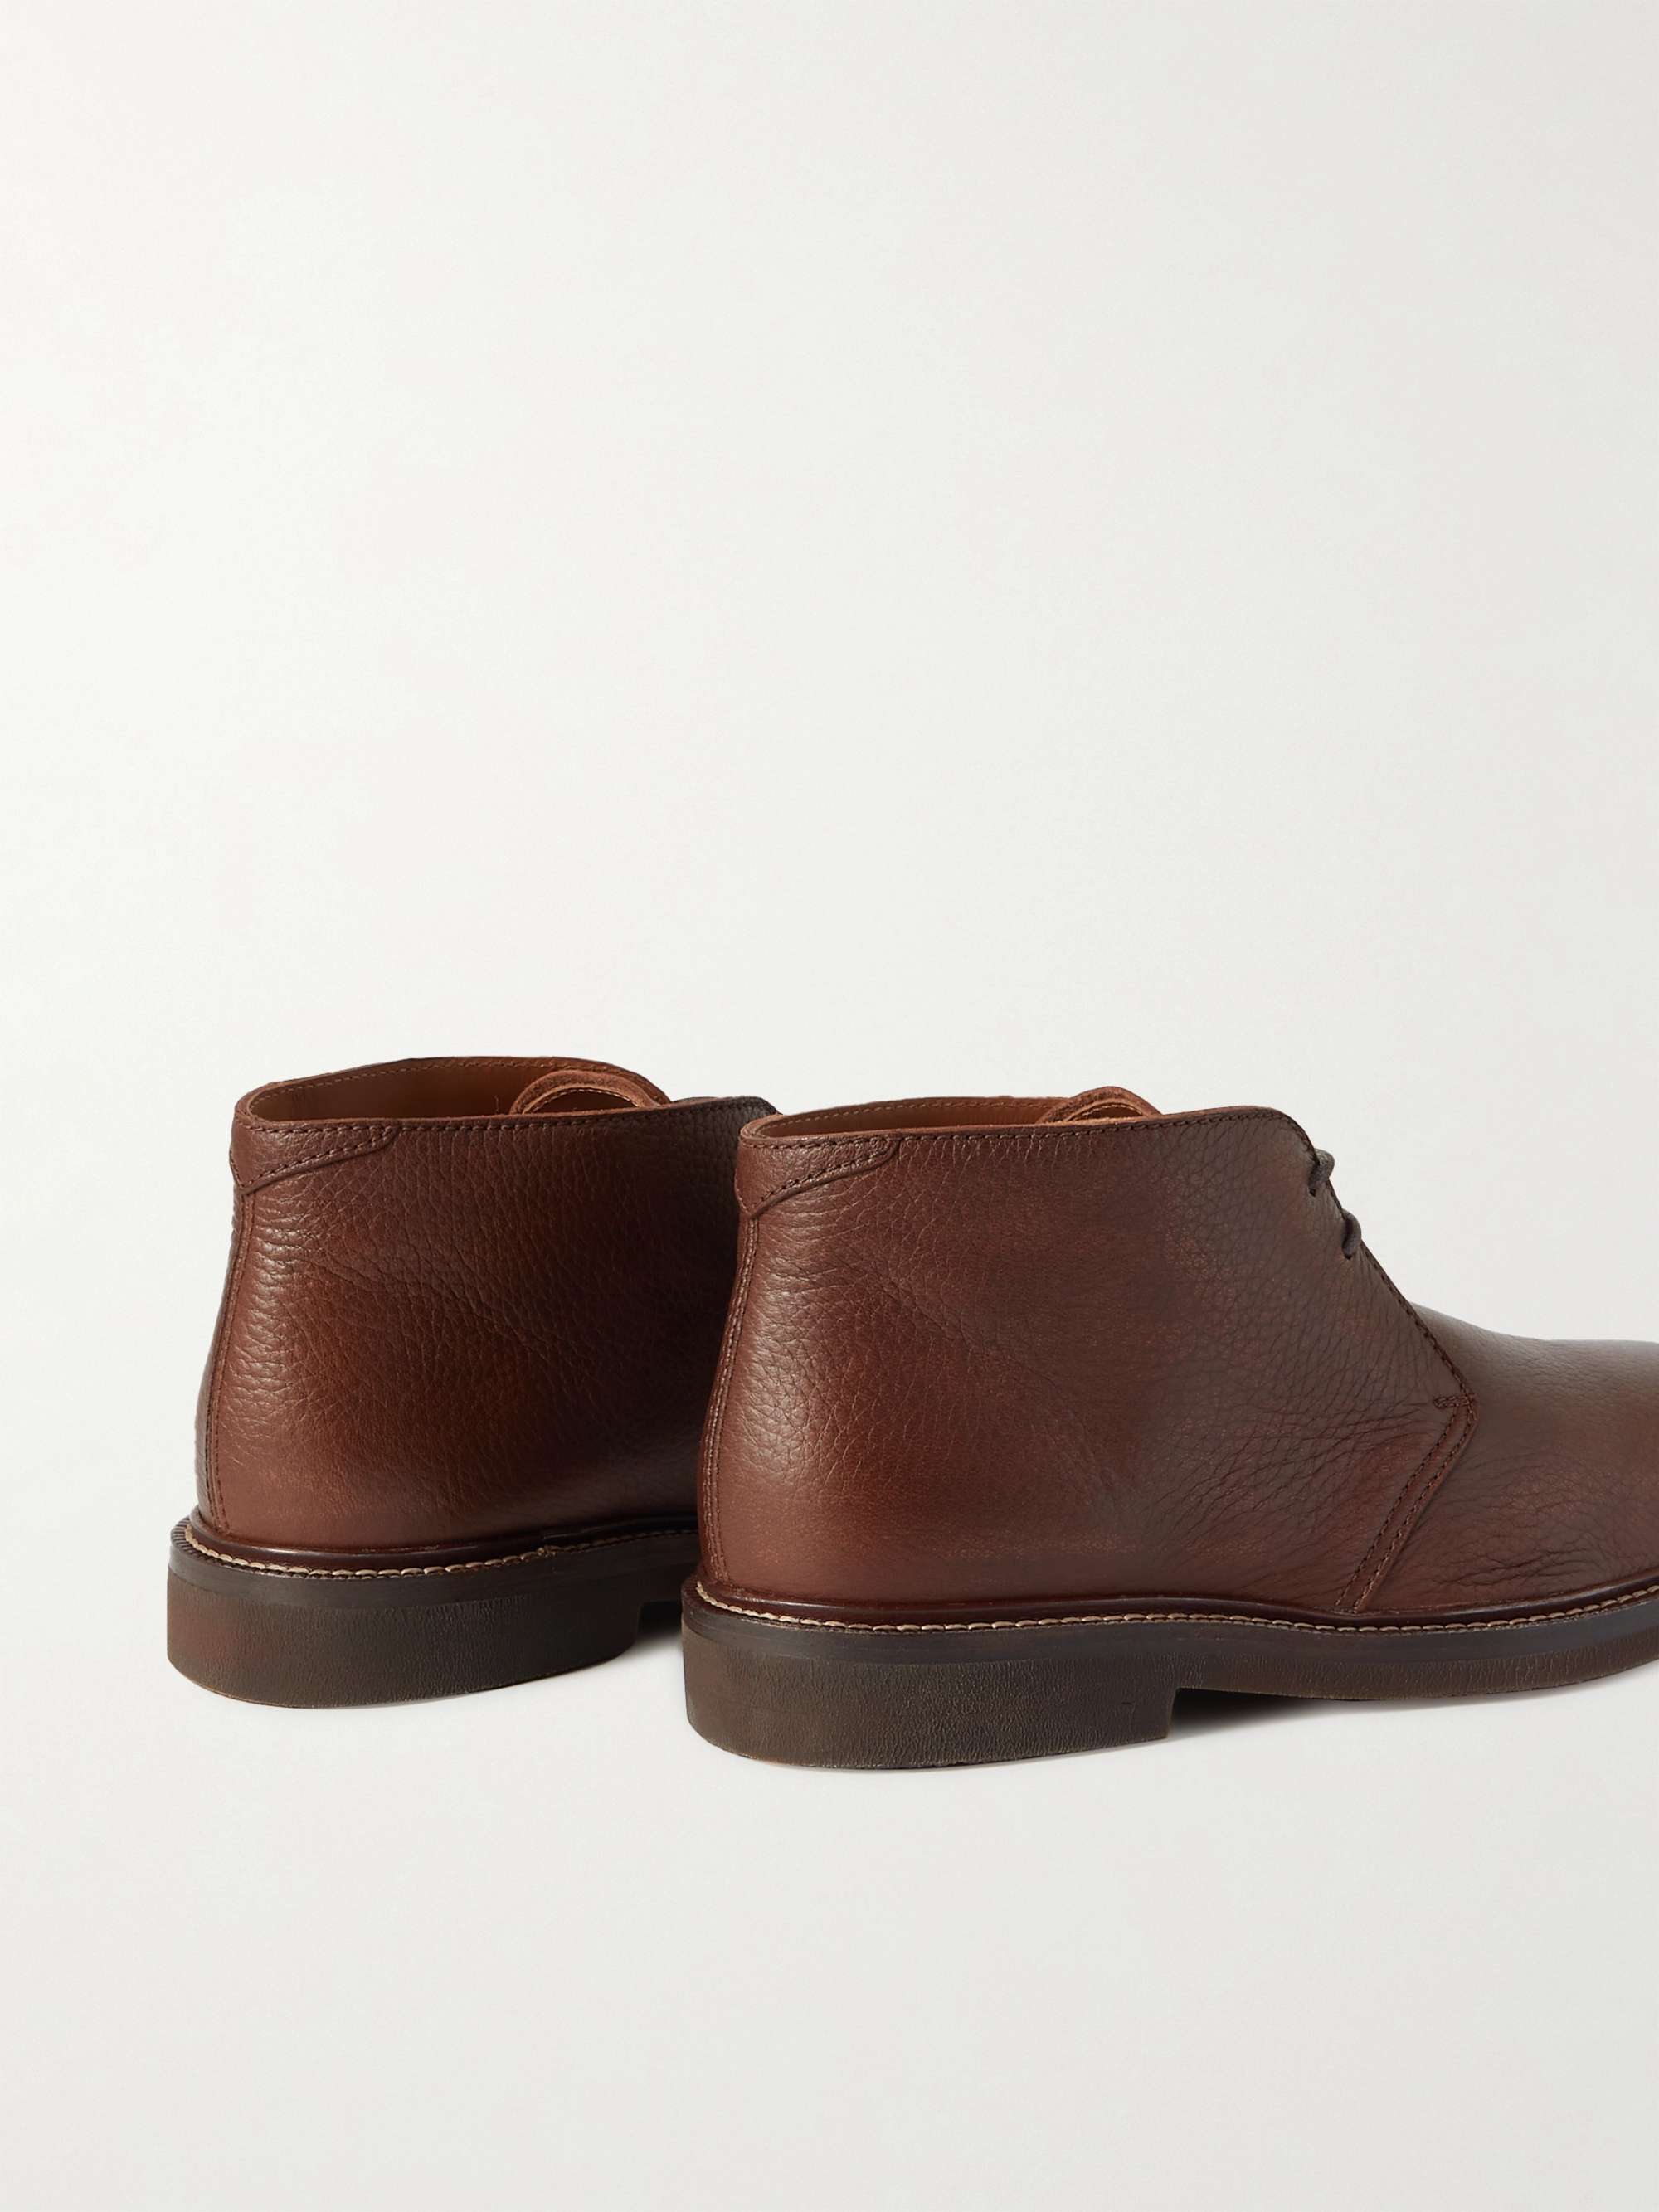 BRUNELLO CUCINELLI Textured-Leather Desert Boots